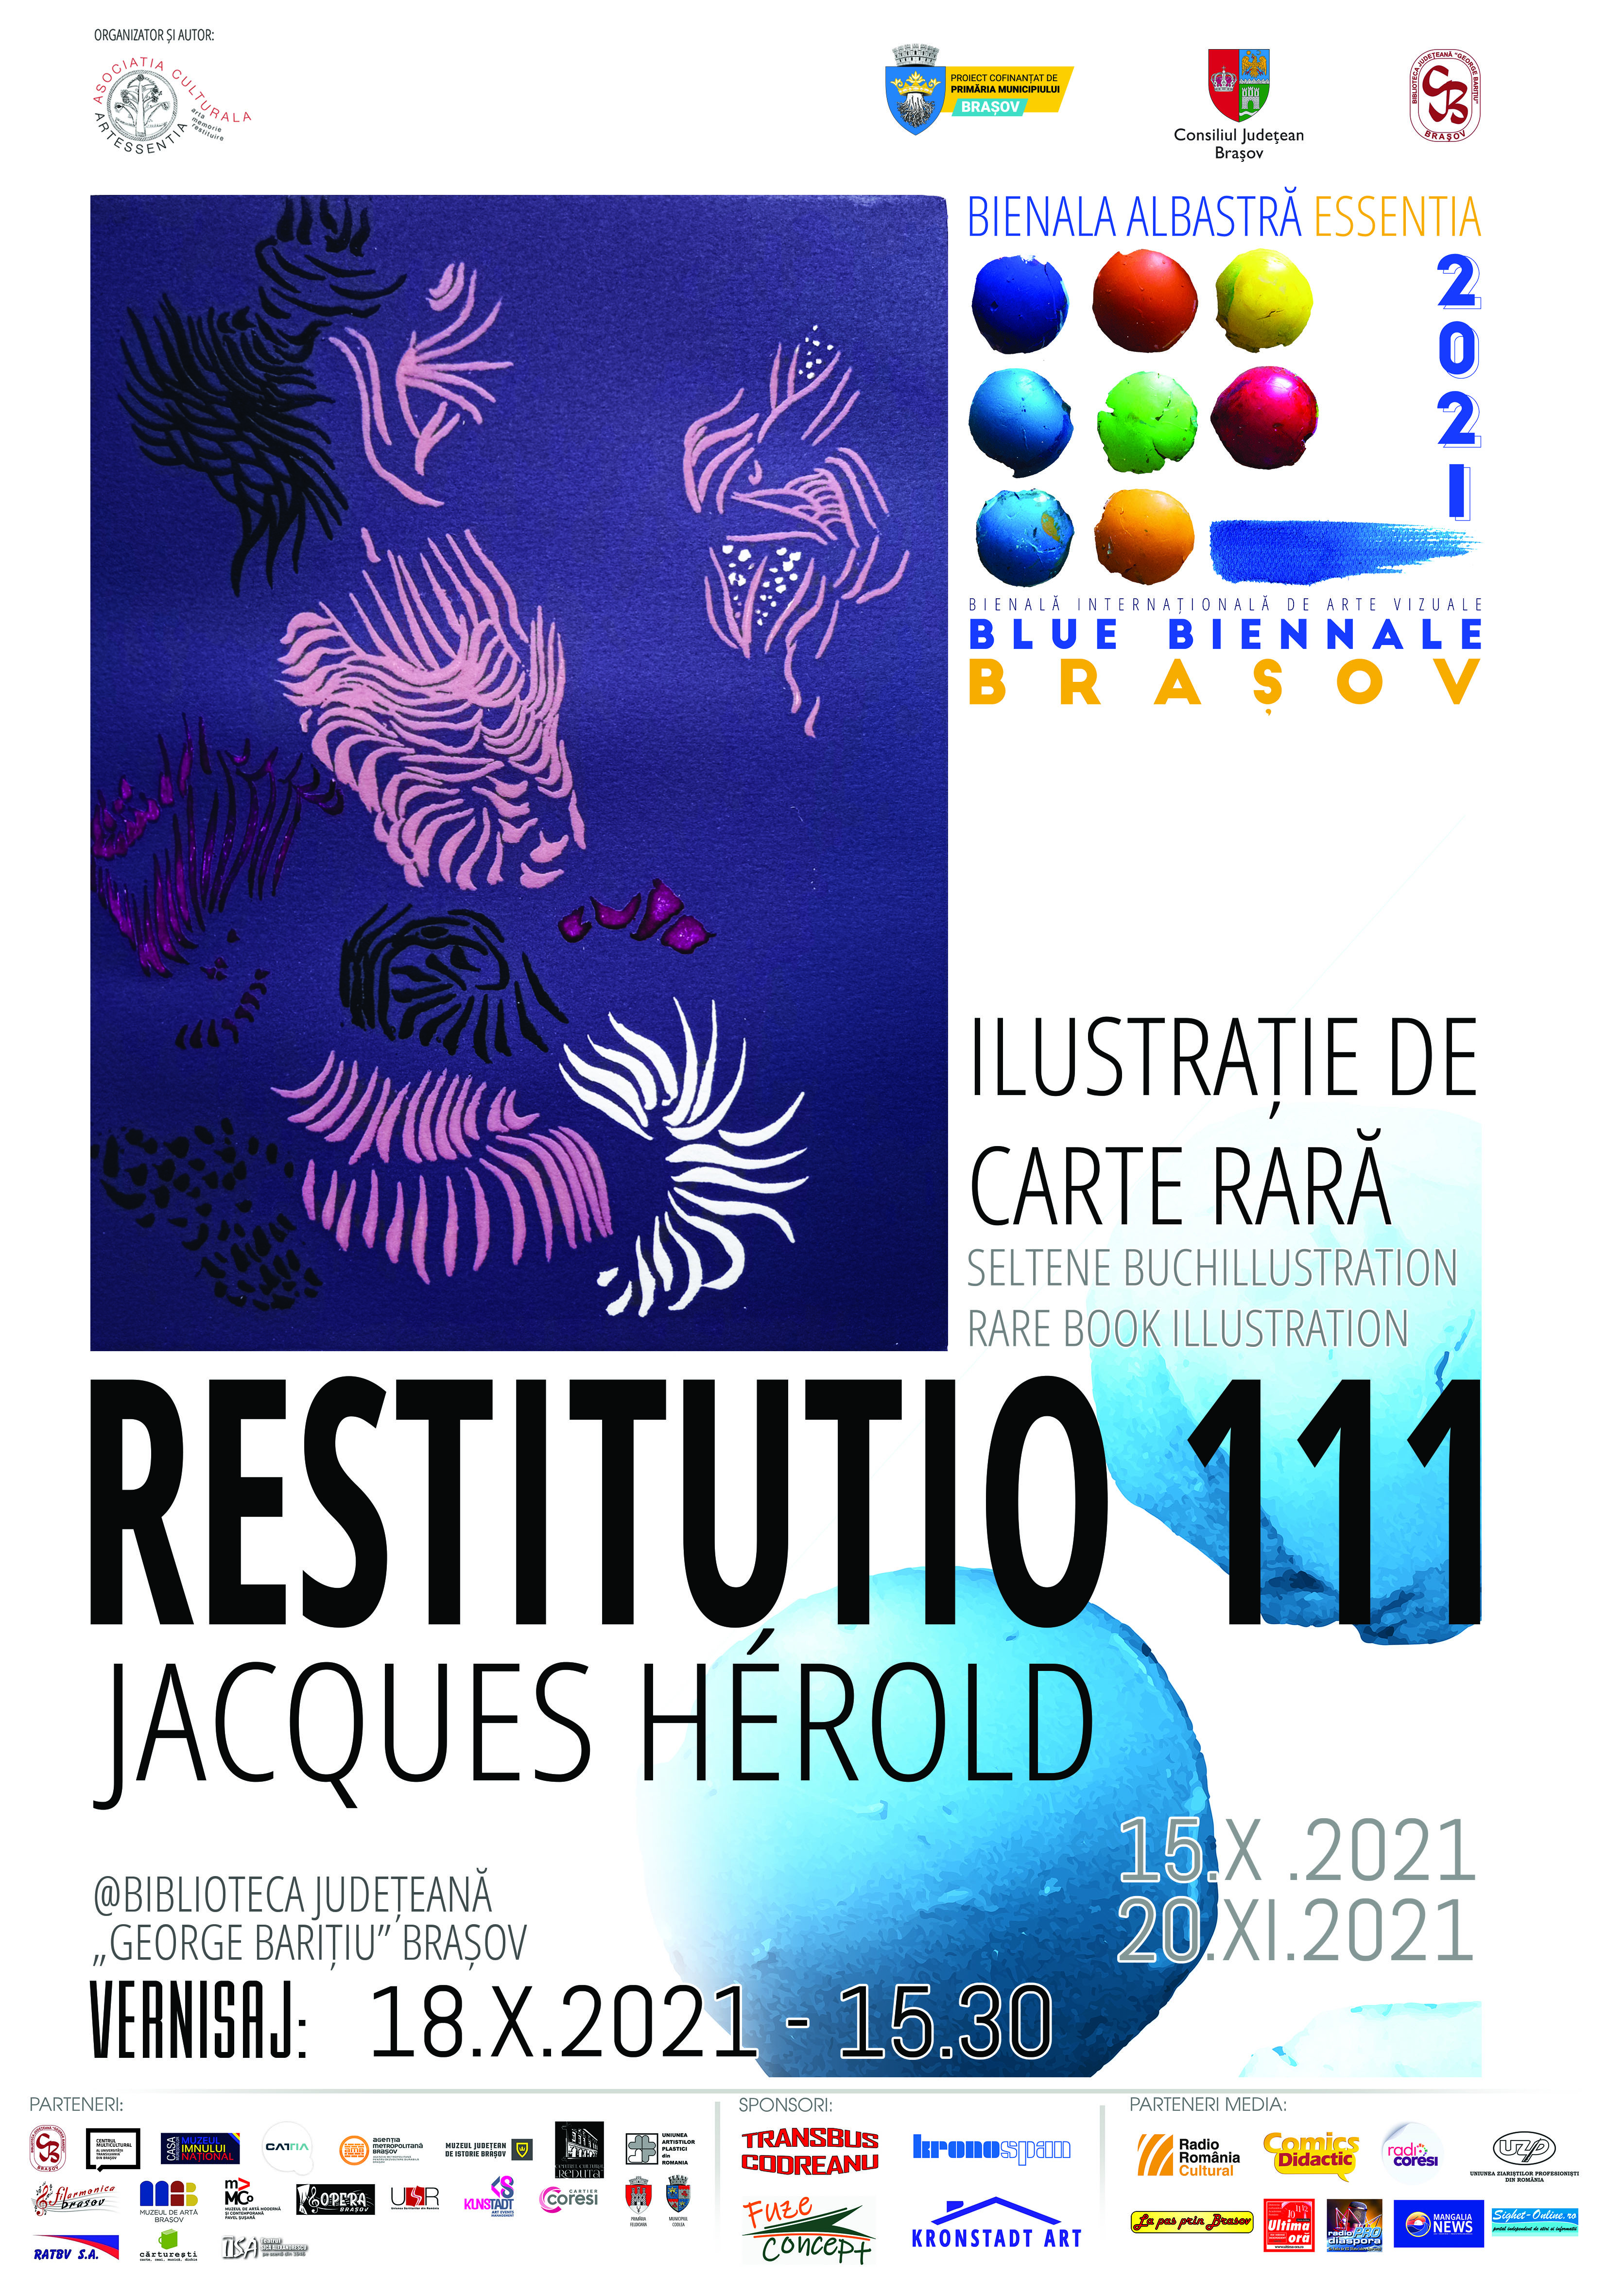 Restitutio 111 - Jacques Hérold - expoziţie de carte rară